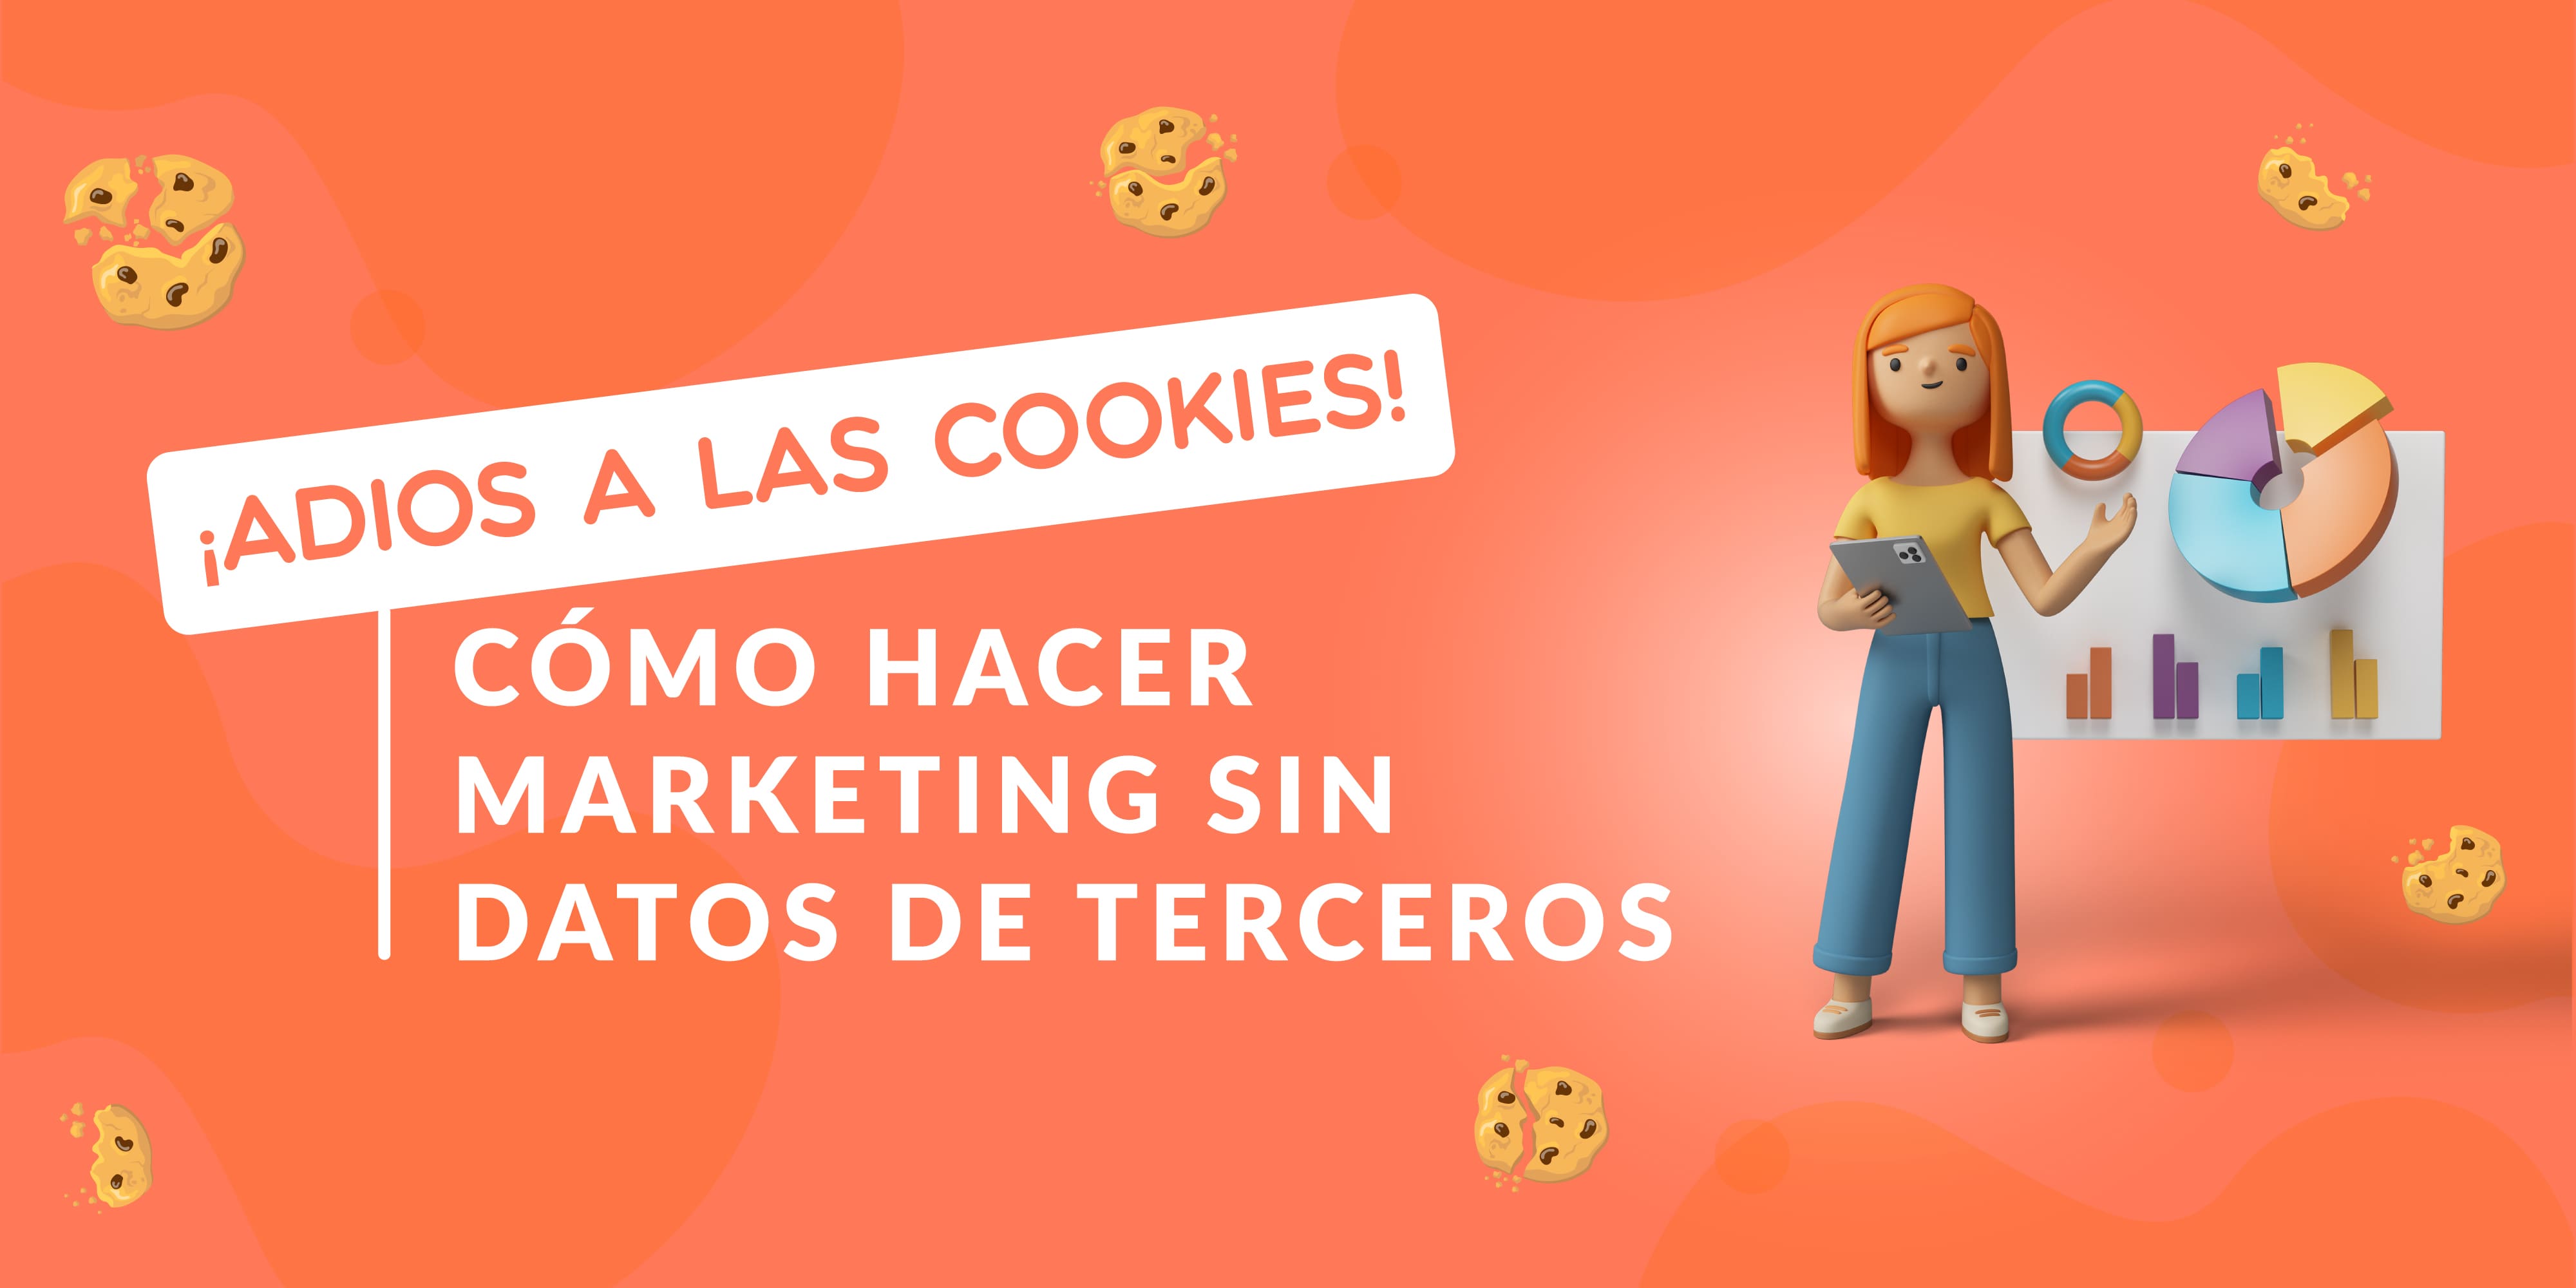 ¡Adiós a las cookies! Cómo hacer marketing sin datos de terceros